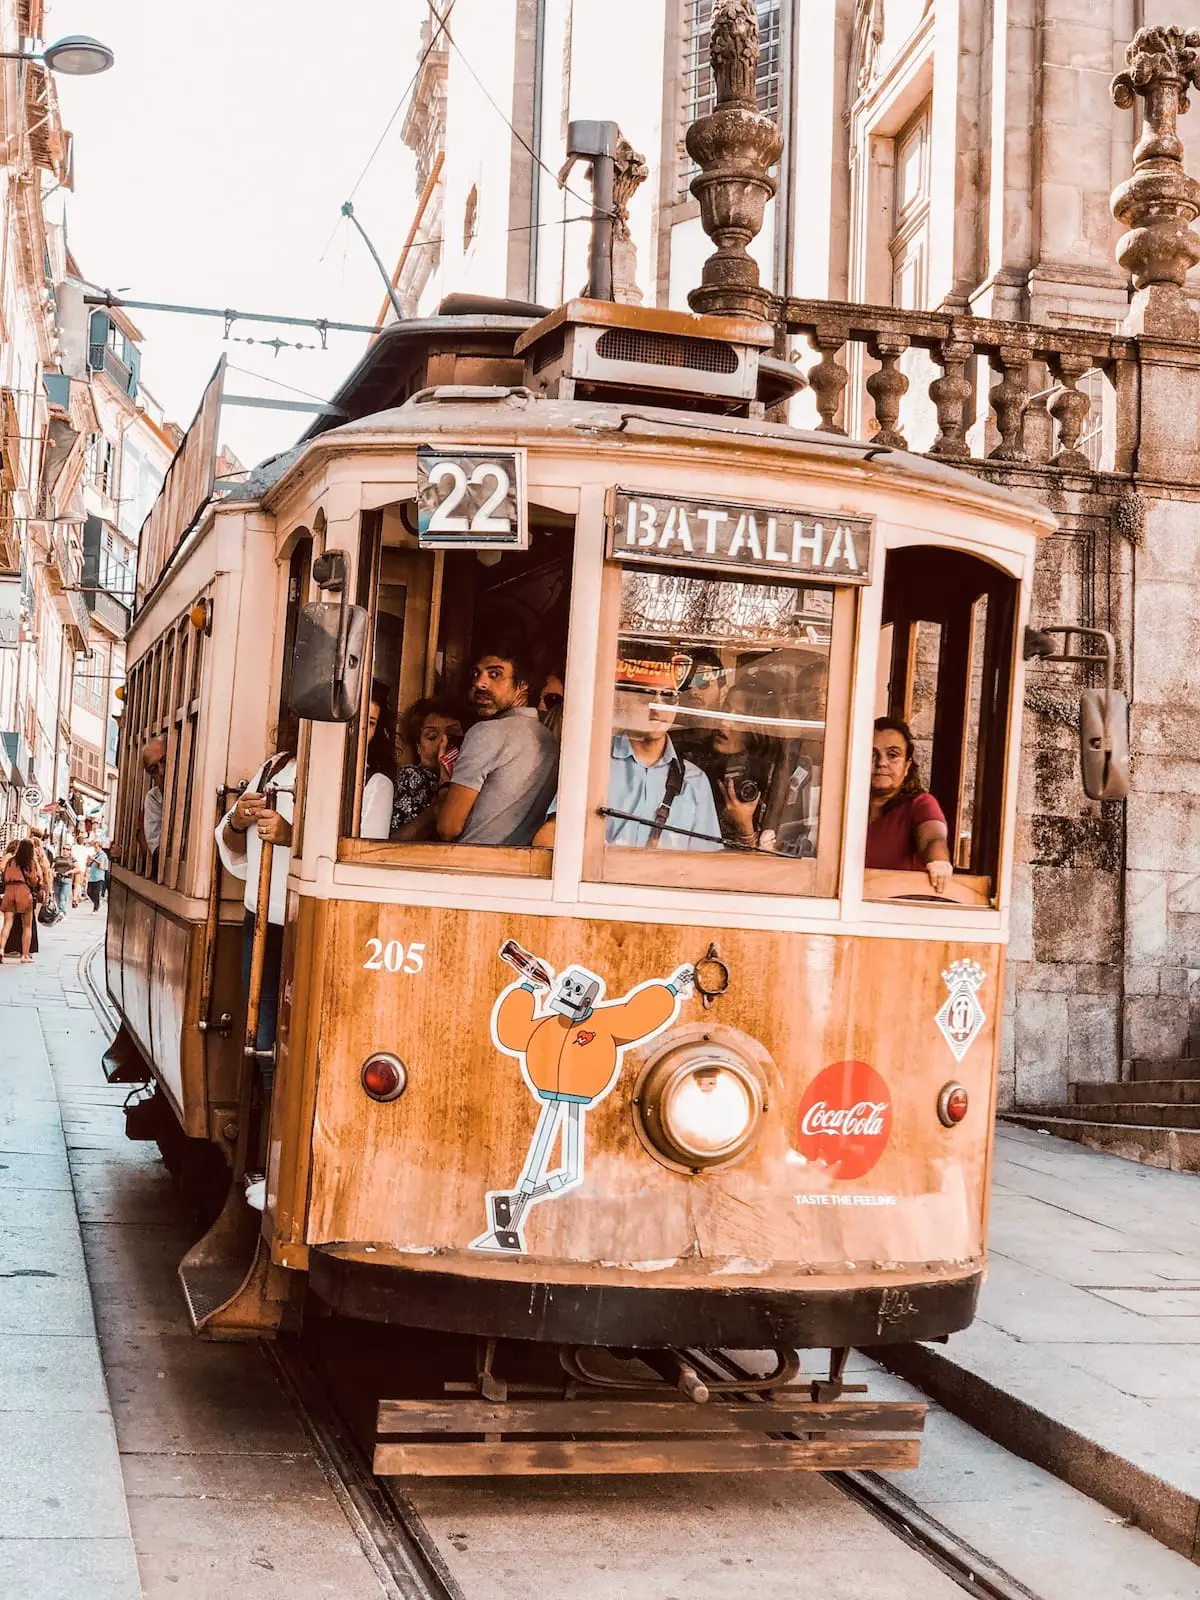 Städtereise Porto, Urlaub in Portugal, Reisetipps und Sehenswürdigkeiten Porto, Fisch essen in Porto Städtetrip, historische Tram